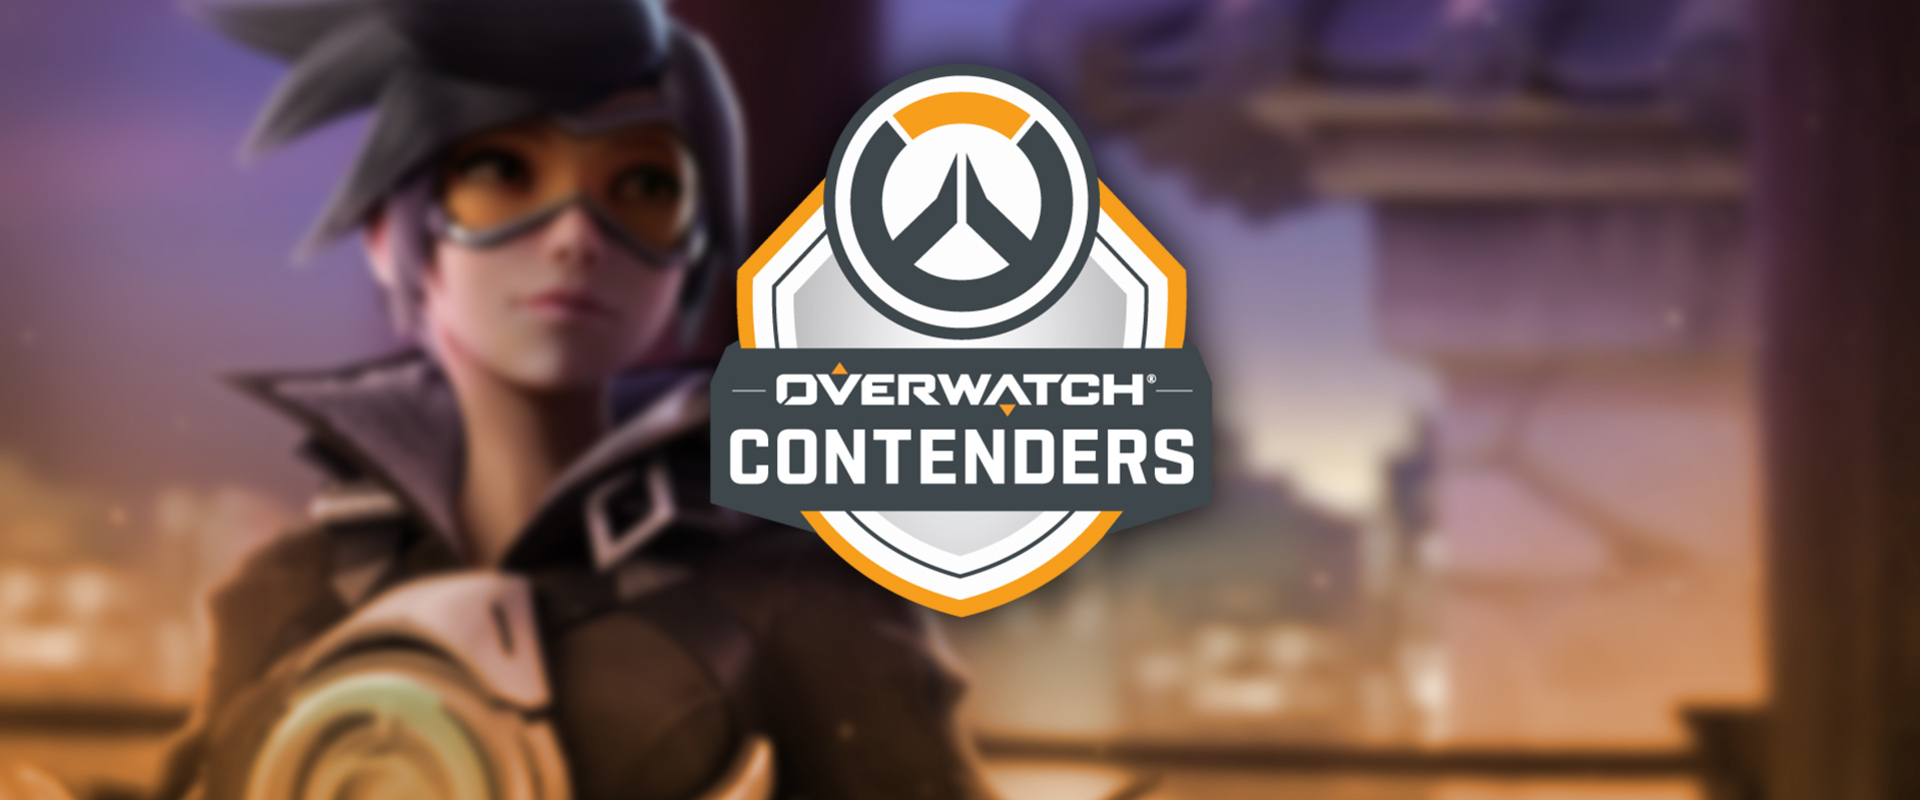 Megvan az első 8 európai csapat az Overwatch Contenders nulladik szezonjára